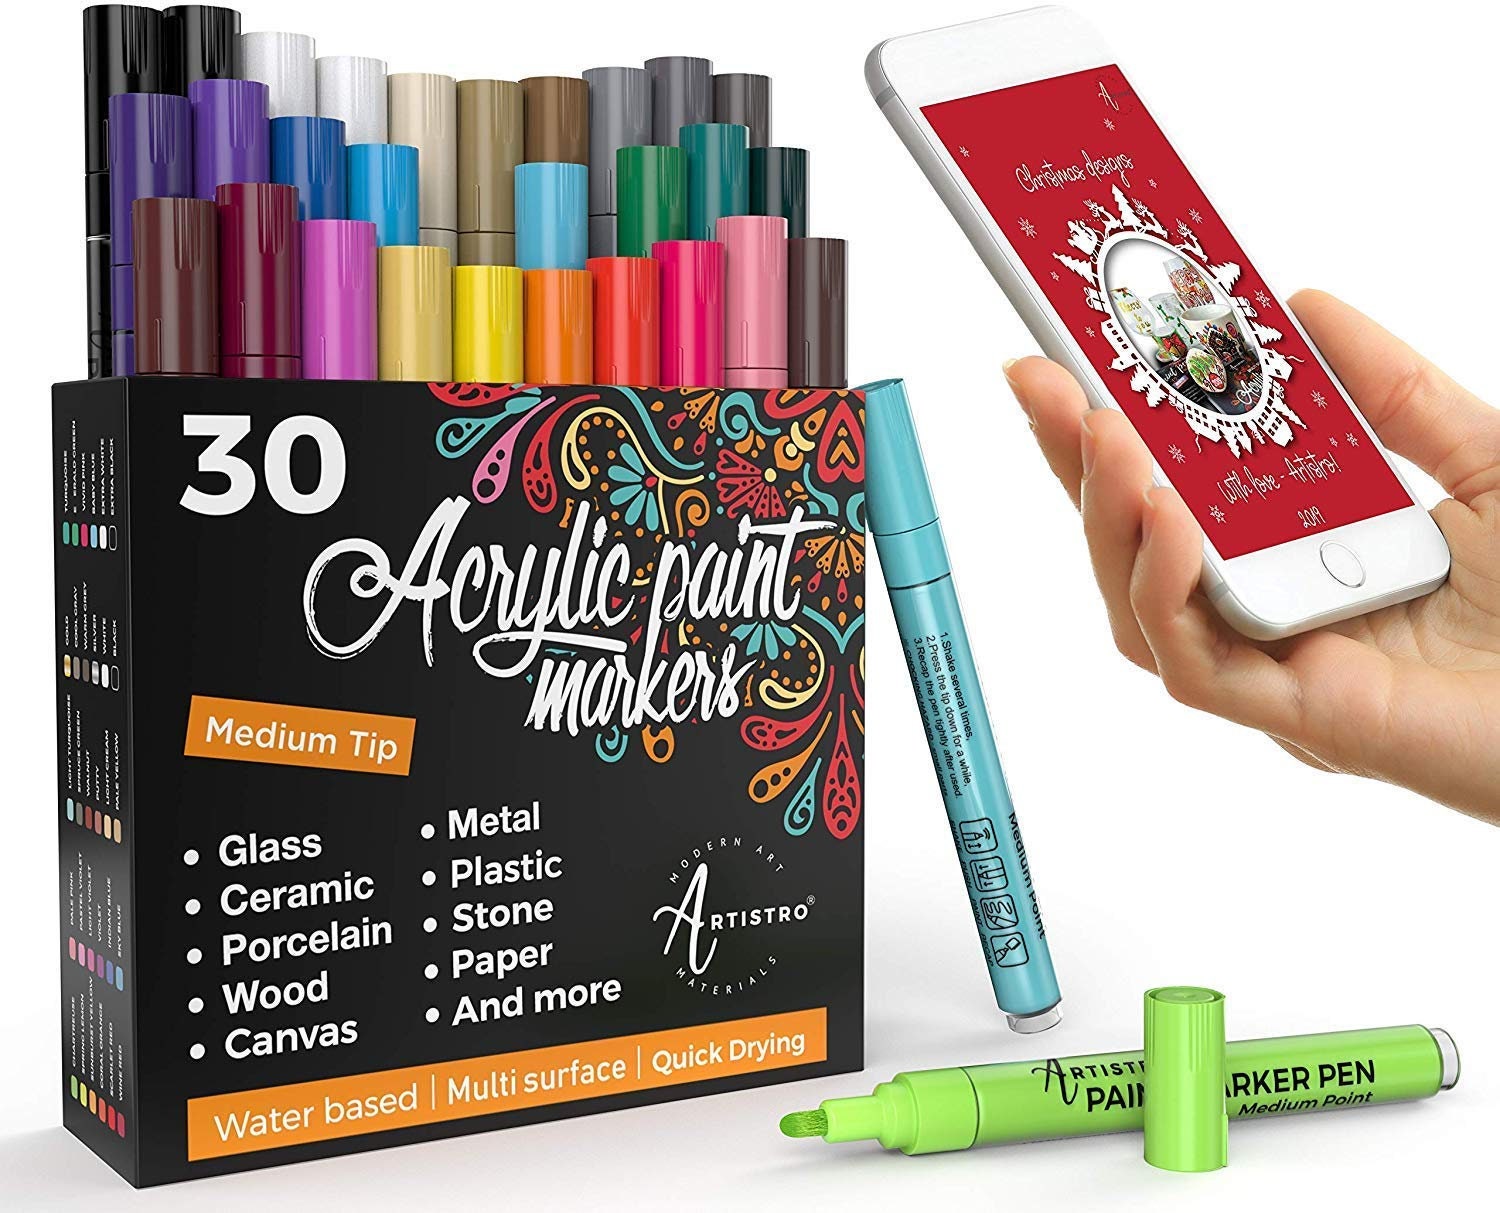 Artistro Acrylic Paint Pens Medium Tip 2mm Pour la peinture